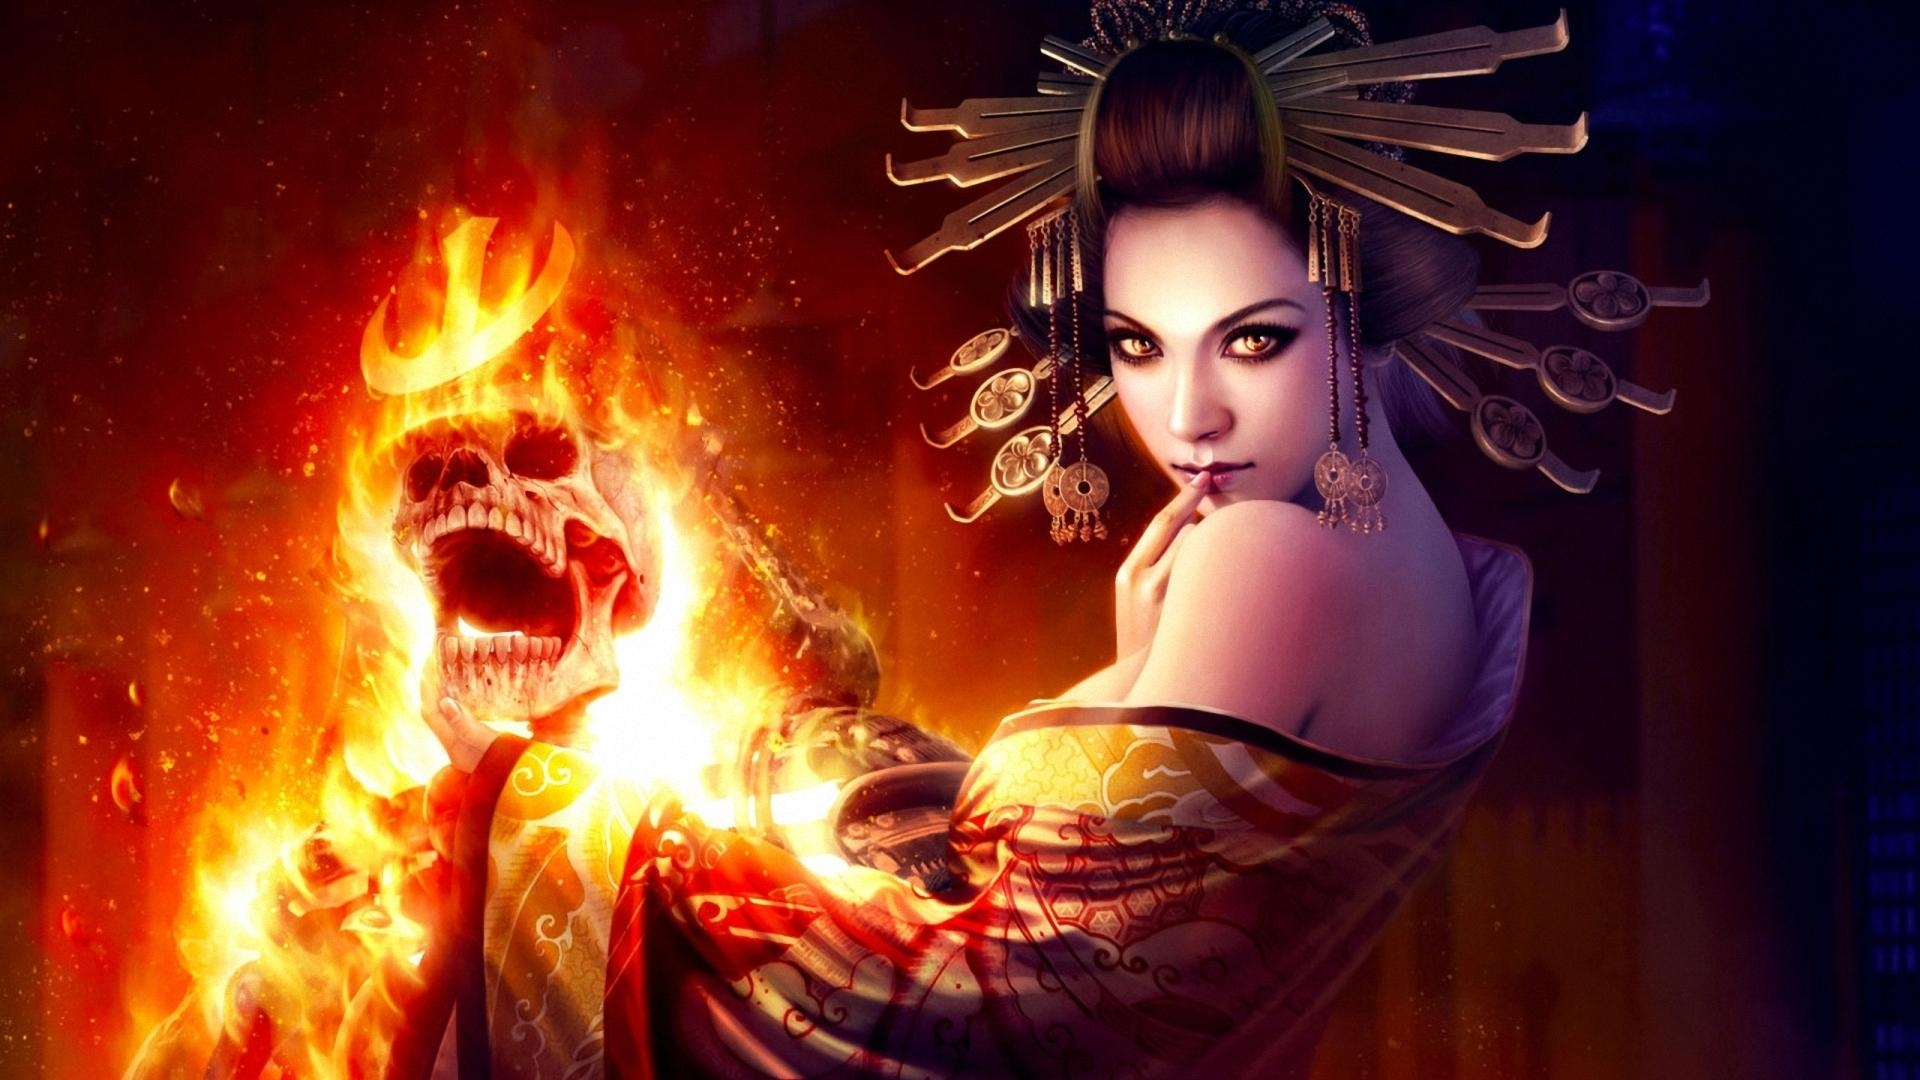 A Fiery Geisha [1920x1080] - Fire Women Fantasy Art , HD Wallpaper & Backgrounds